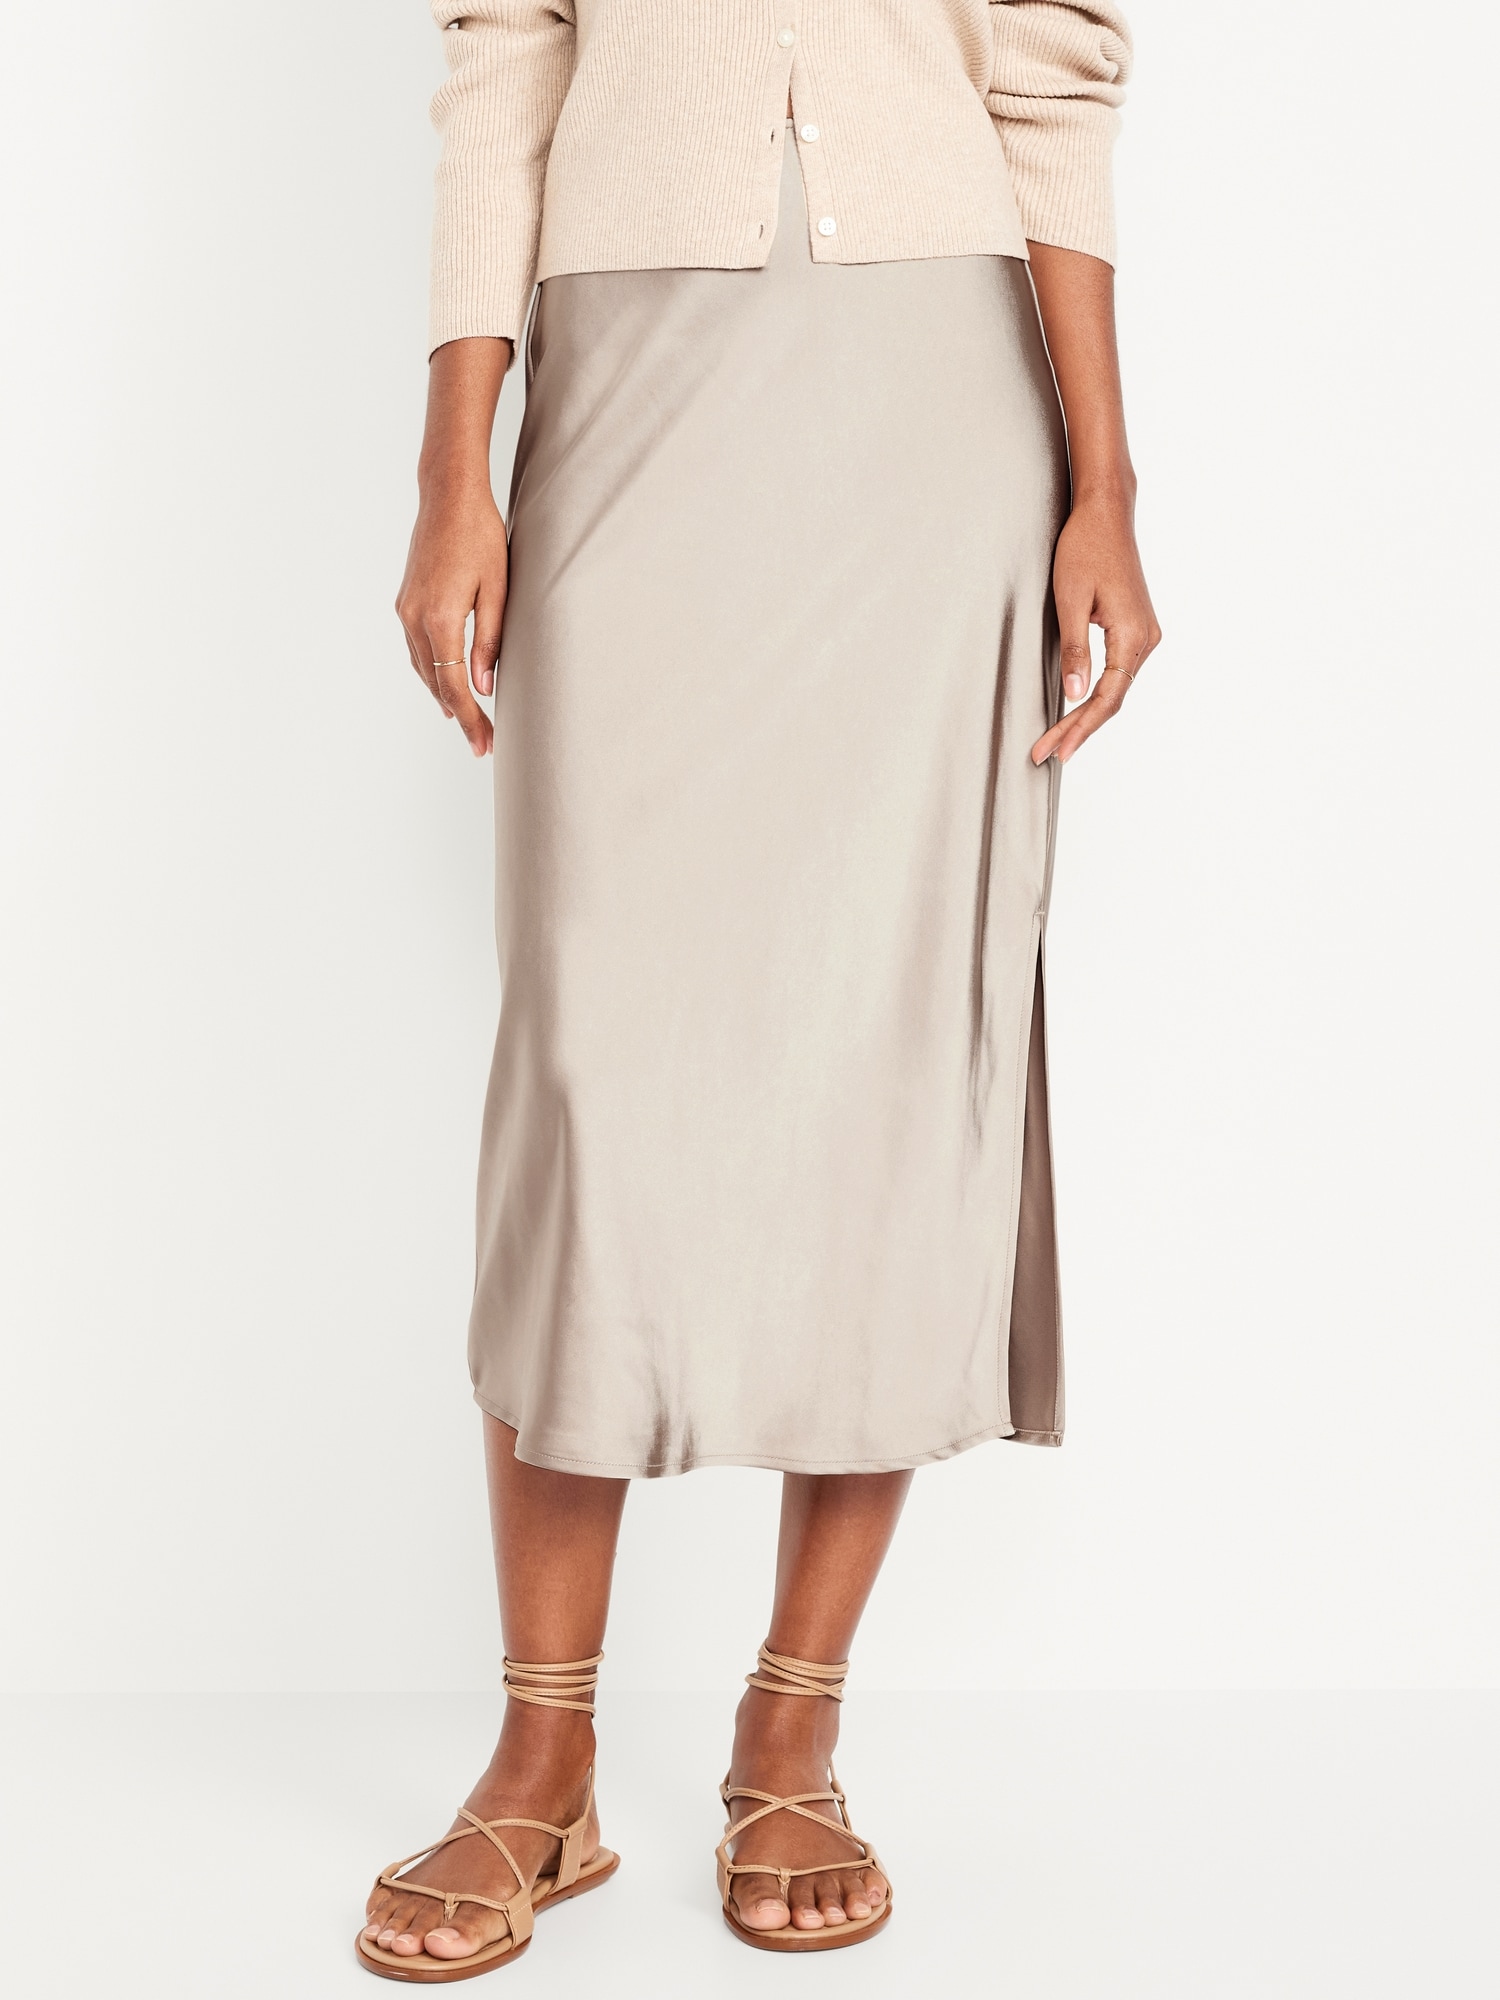 High-Waisted Satin Midi Slip Skirt Hot Deal